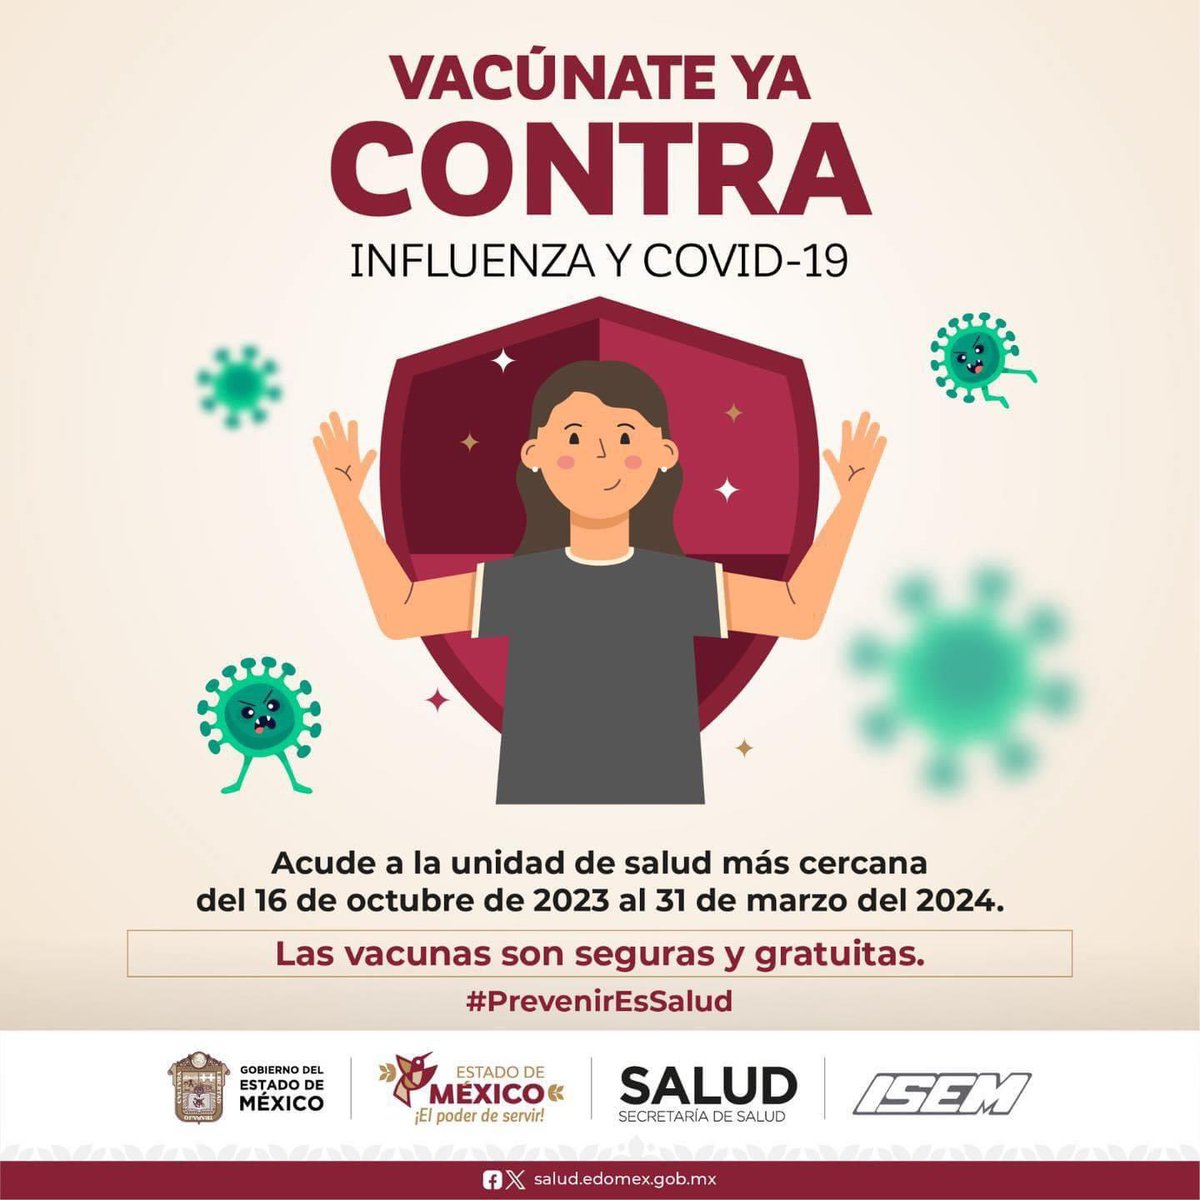 Vacúnate contra la #Influenza, en esta
#Temporadalnvernal es importante reforzar las medidas preventivas y prevenir las enfermedades respiratorias.
#CuidemosTodosDeTodos